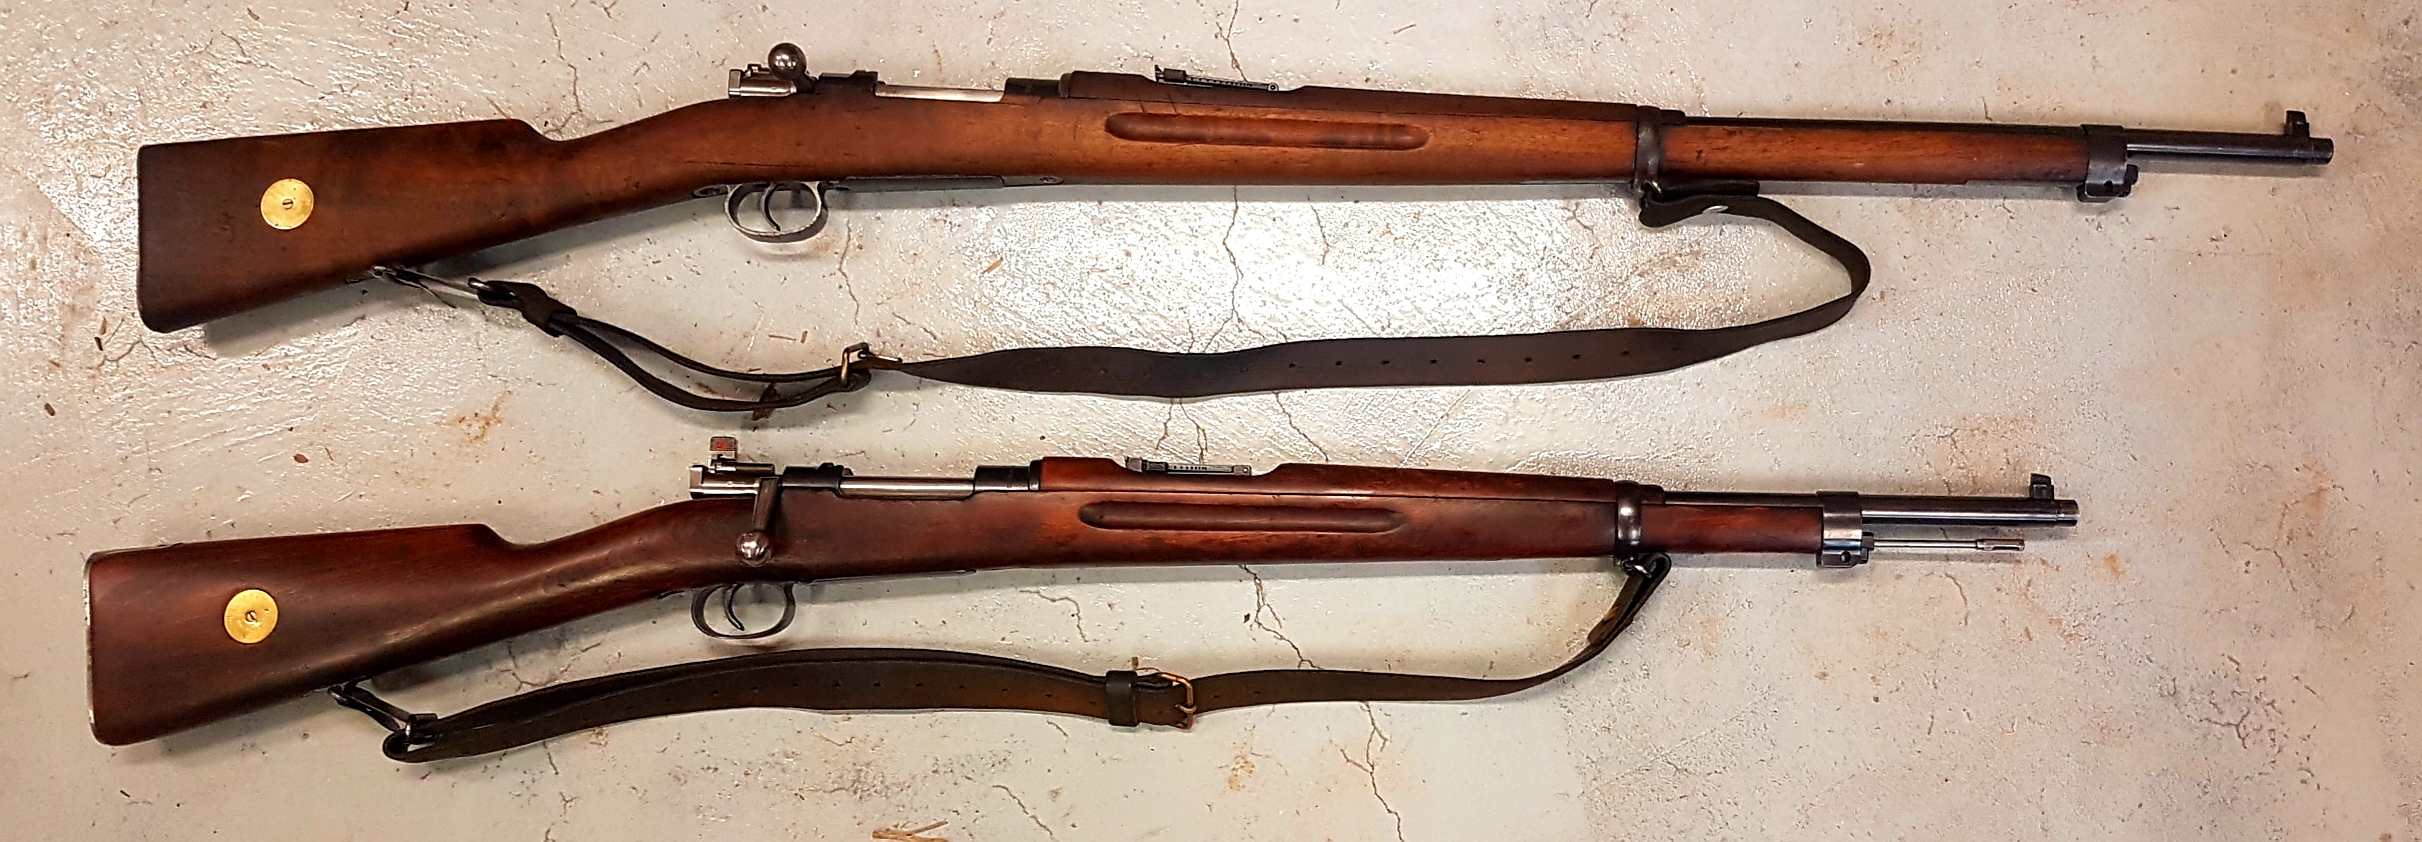 Carl gustaf rifle serial numbers